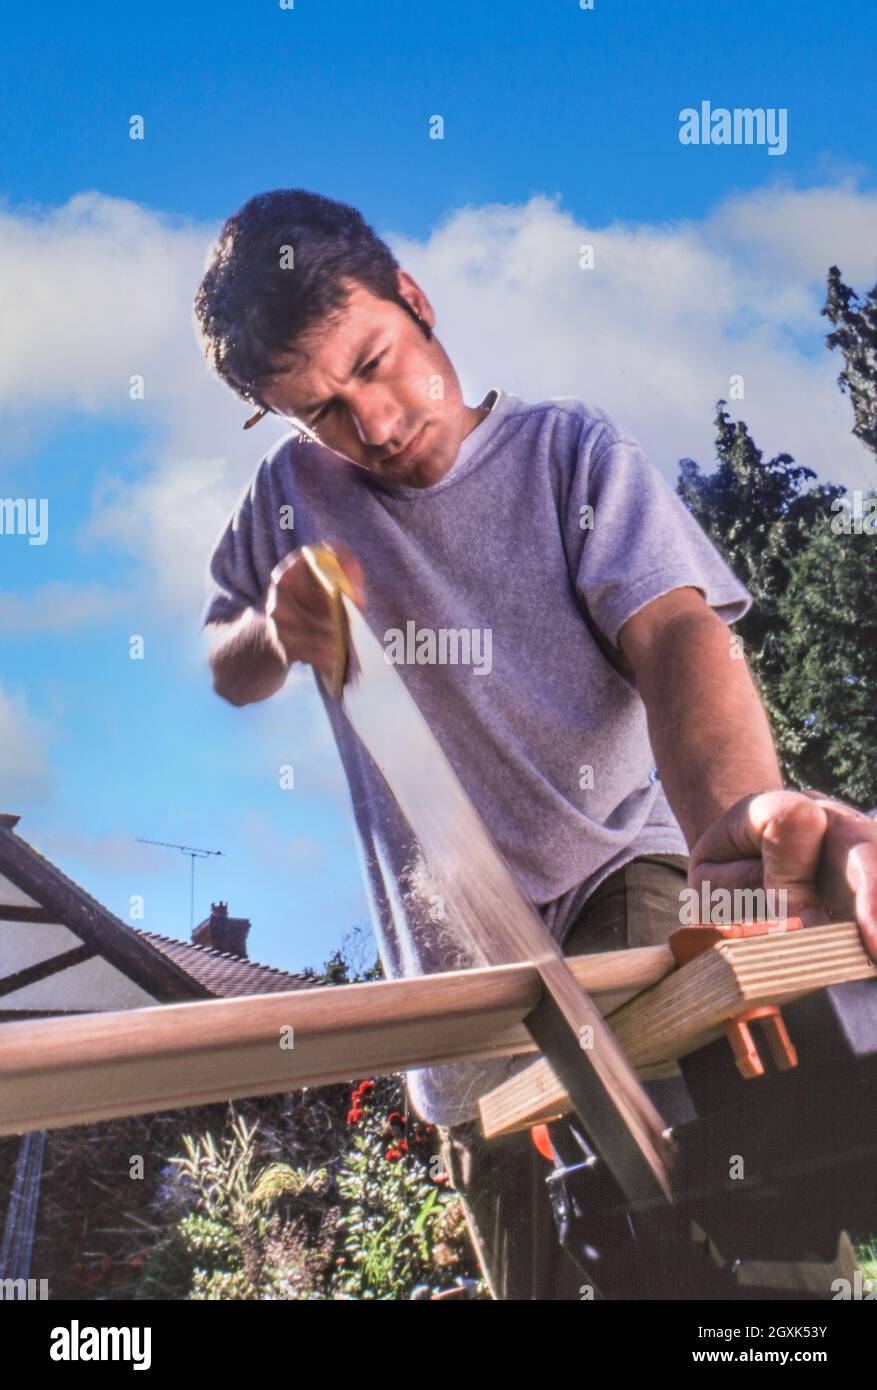 DIY Handyman casa de mejora de mantenimiento 30-40 años en el hogar DIY handyman que trabaja al aire libre en el jardín de la casa, aserrando una tabla de madera en un banco de trabajo, ángulo bajo fuera con el cielo azul de la casa y las nubes en el fondo Foto de stock